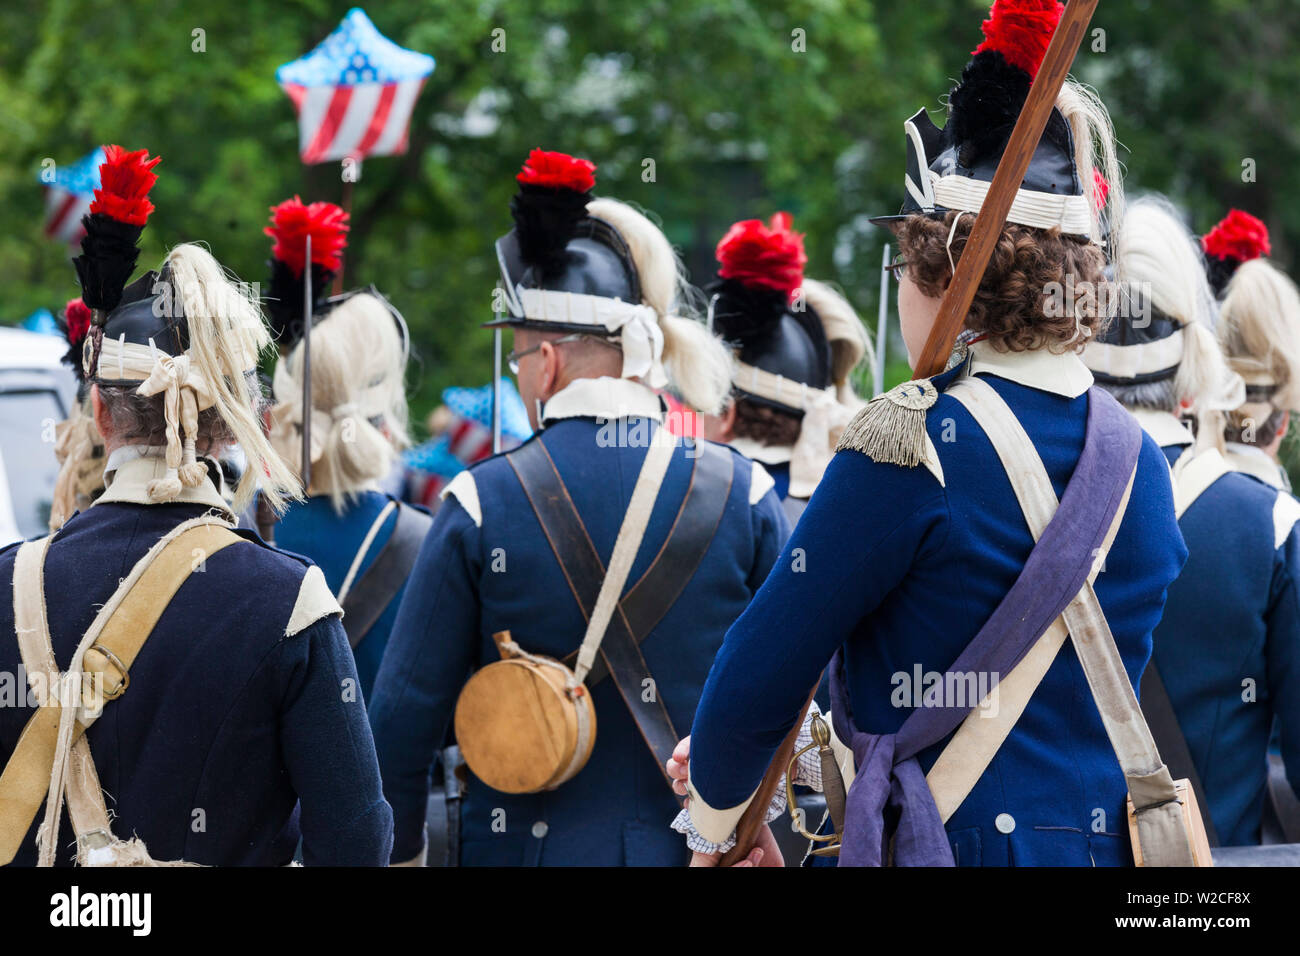 USA, Massachusetts, Cape Ann, Manchester par la mer, quatrième de juillet, Parade de reconstitution historique dans l'uniforme de la Révolution américaine Banque D'Images